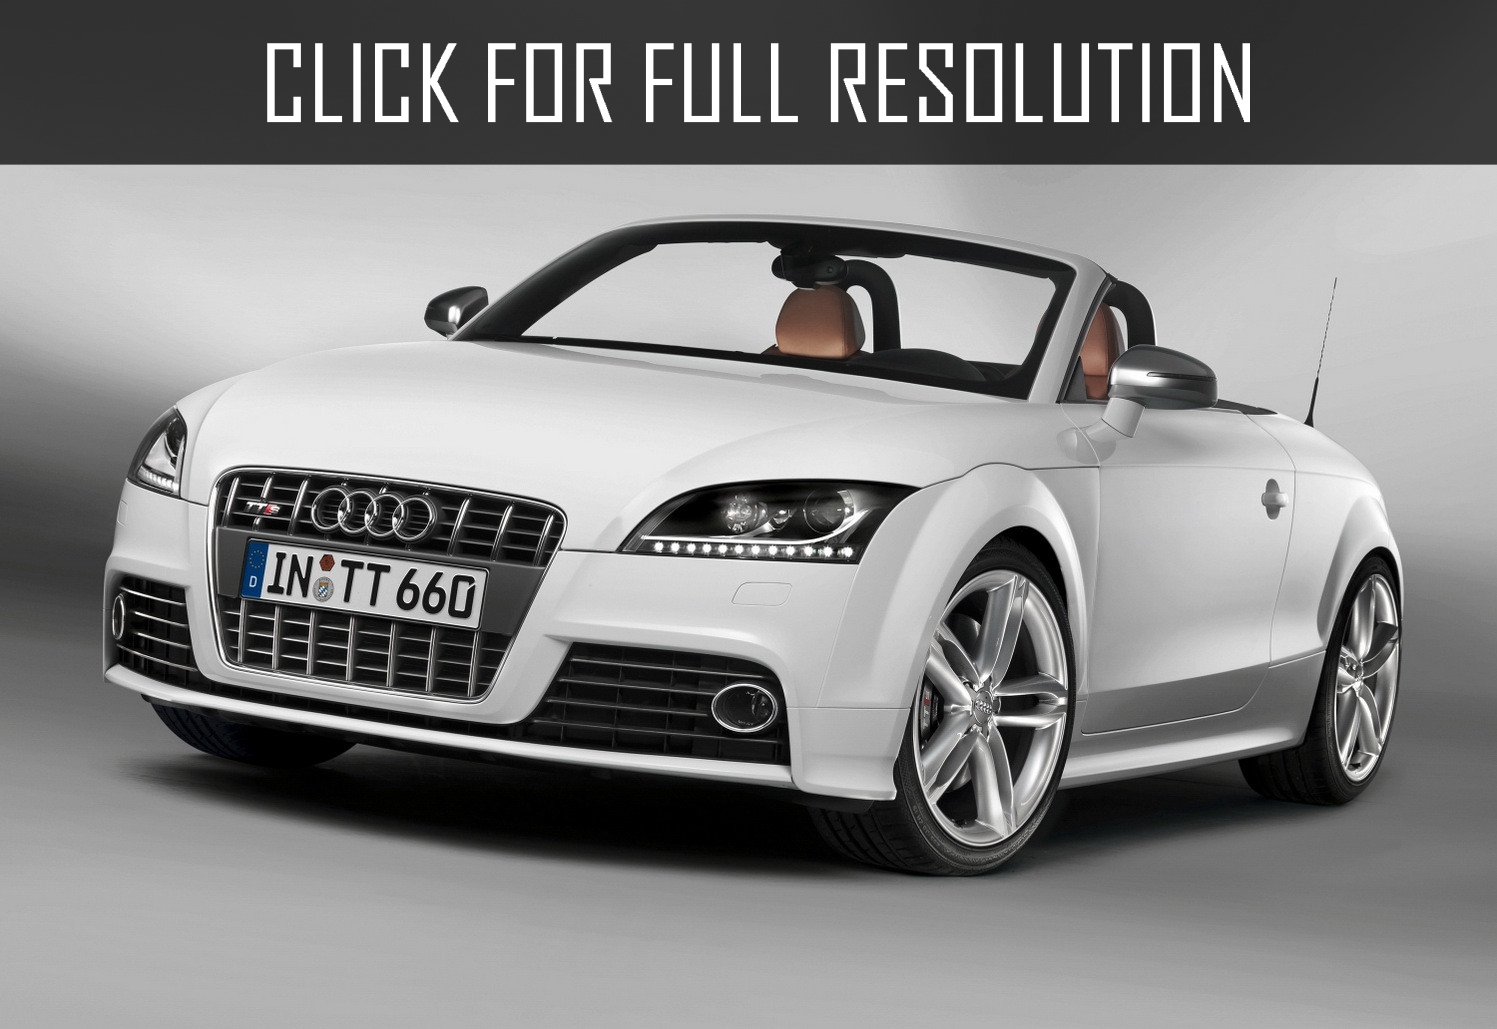 Audi TT 3.2